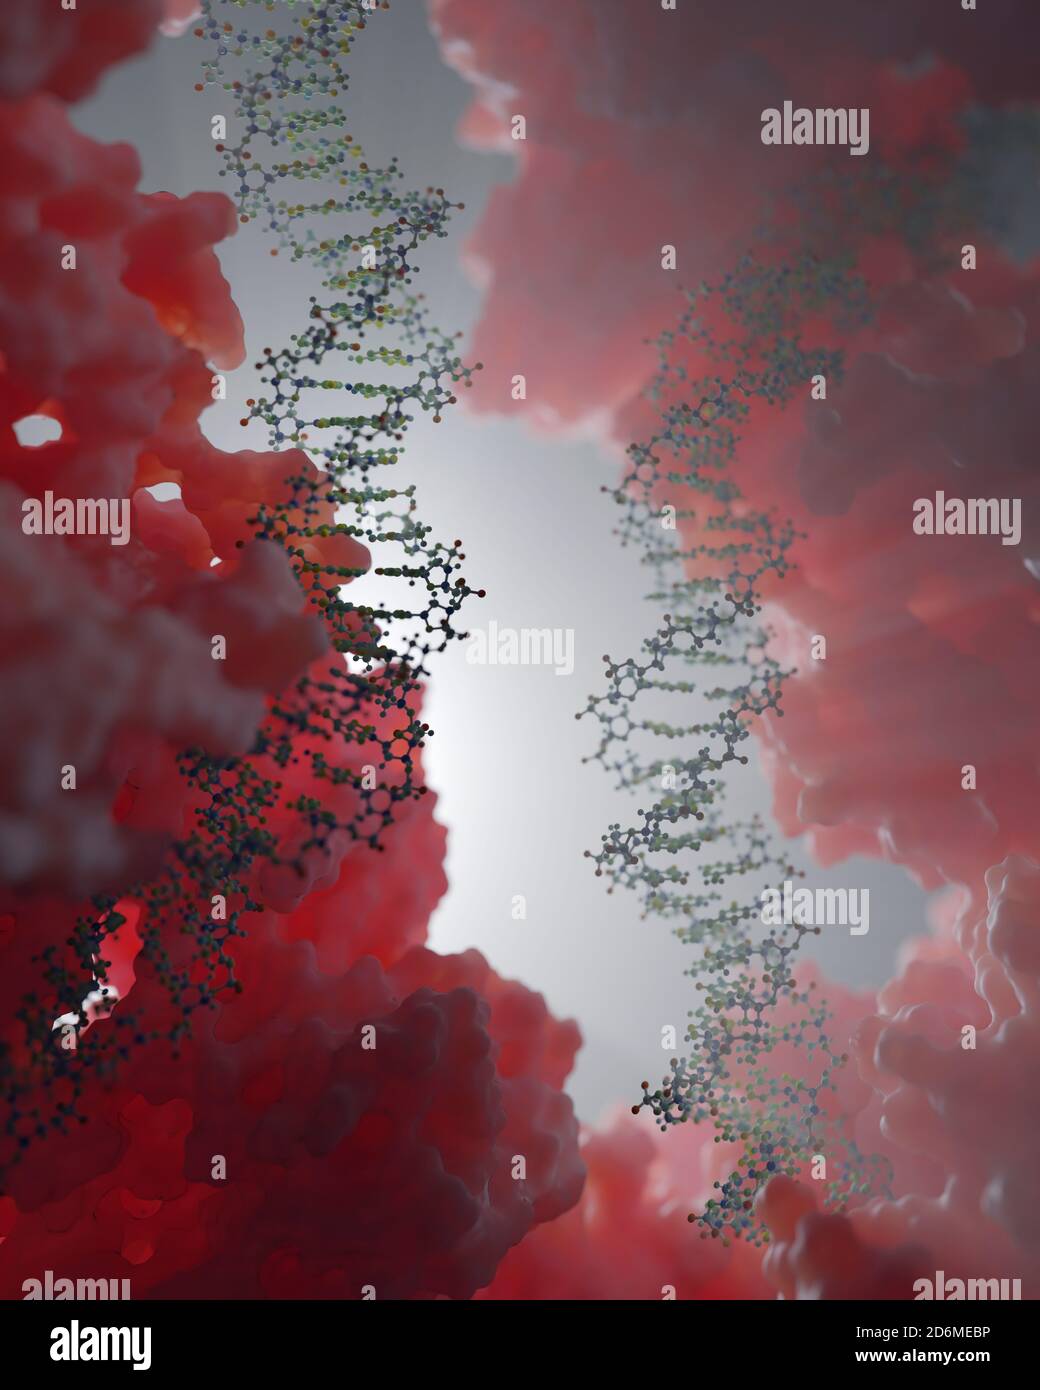 DNA, die genetische Anweisungen trägt, befindet sich im Zellkern, wo sie mit verschiedenen Proteinen in verschiedenen Prozessen interagiert, wie zum Beispiel Replikation. Stockfoto